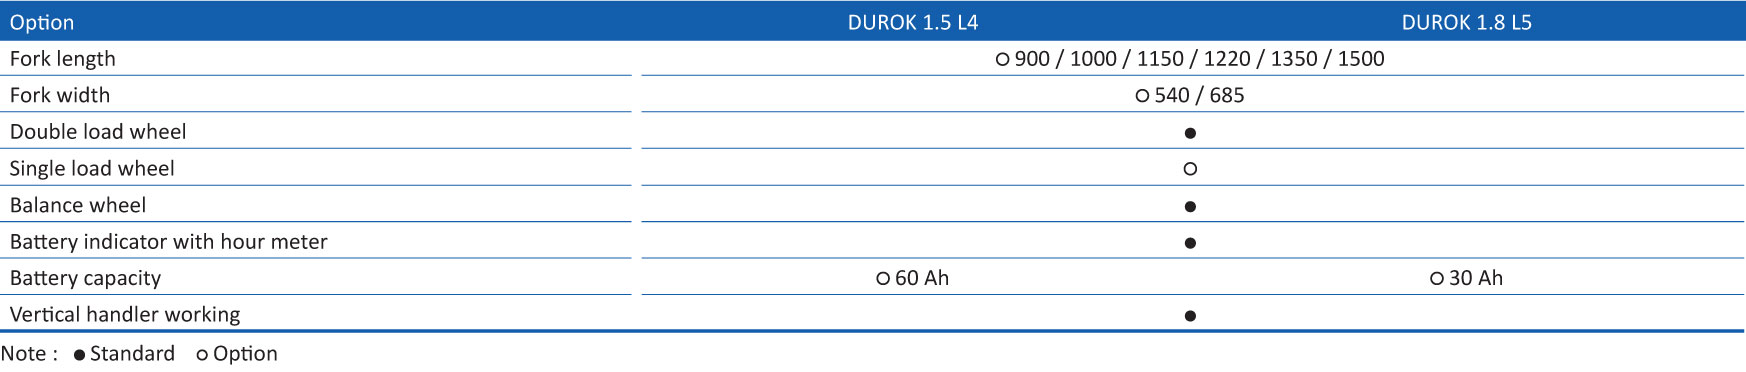 DUROK-1.5-1.8-option.jpg (84 KB)